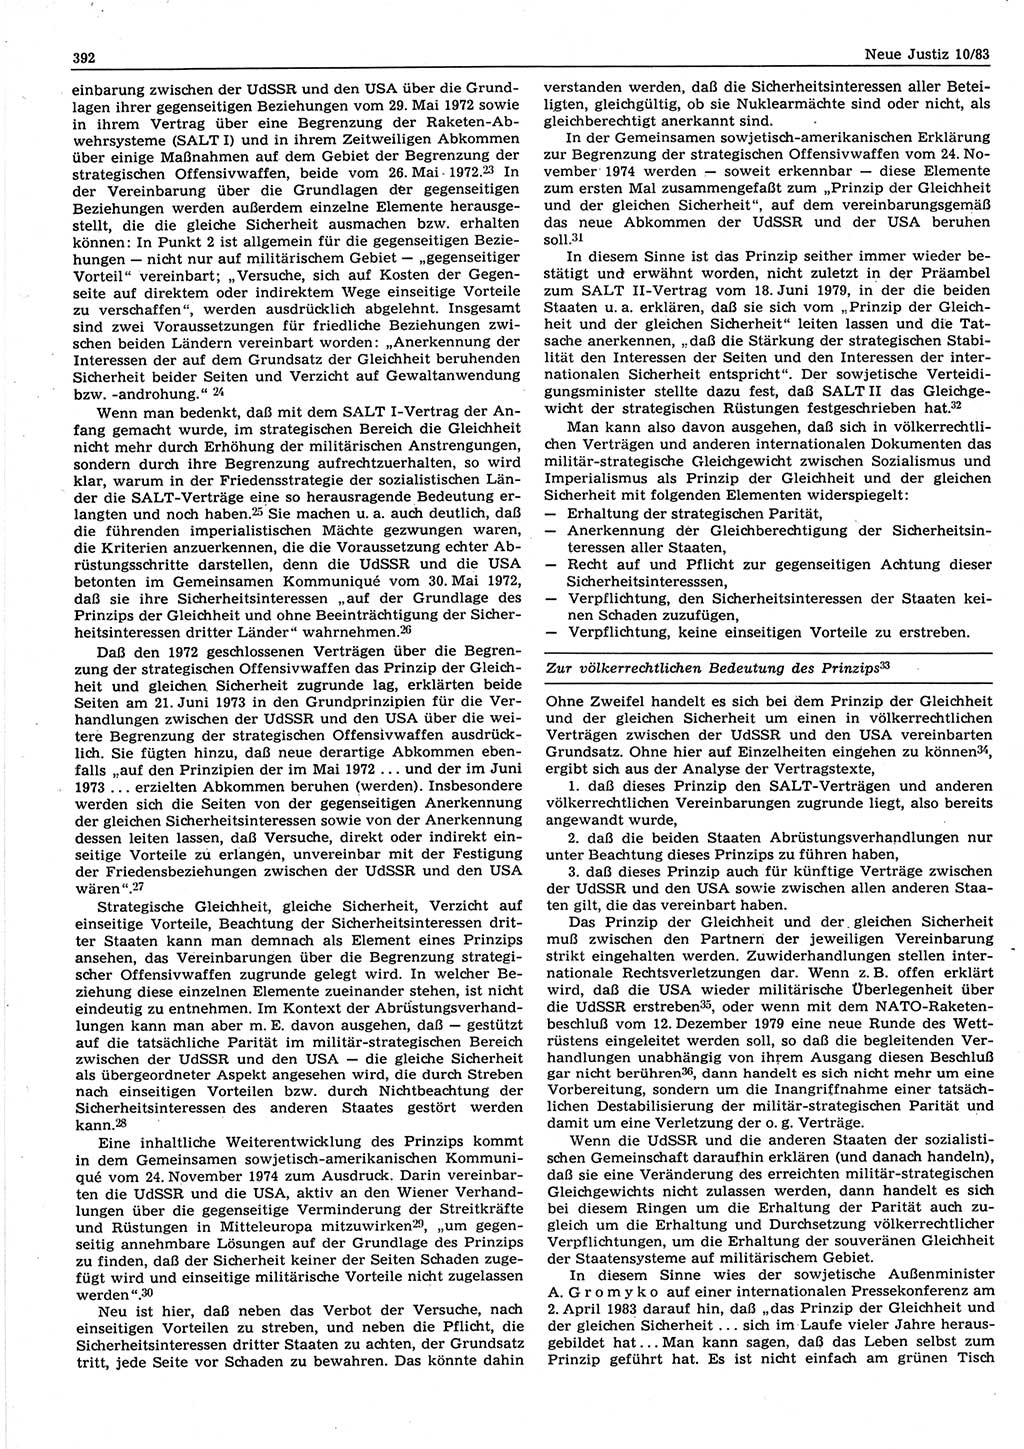 Neue Justiz (NJ), Zeitschrift für sozialistisches Recht und Gesetzlichkeit [Deutsche Demokratische Republik (DDR)], 37. Jahrgang 1983, Seite 392 (NJ DDR 1983, S. 392)